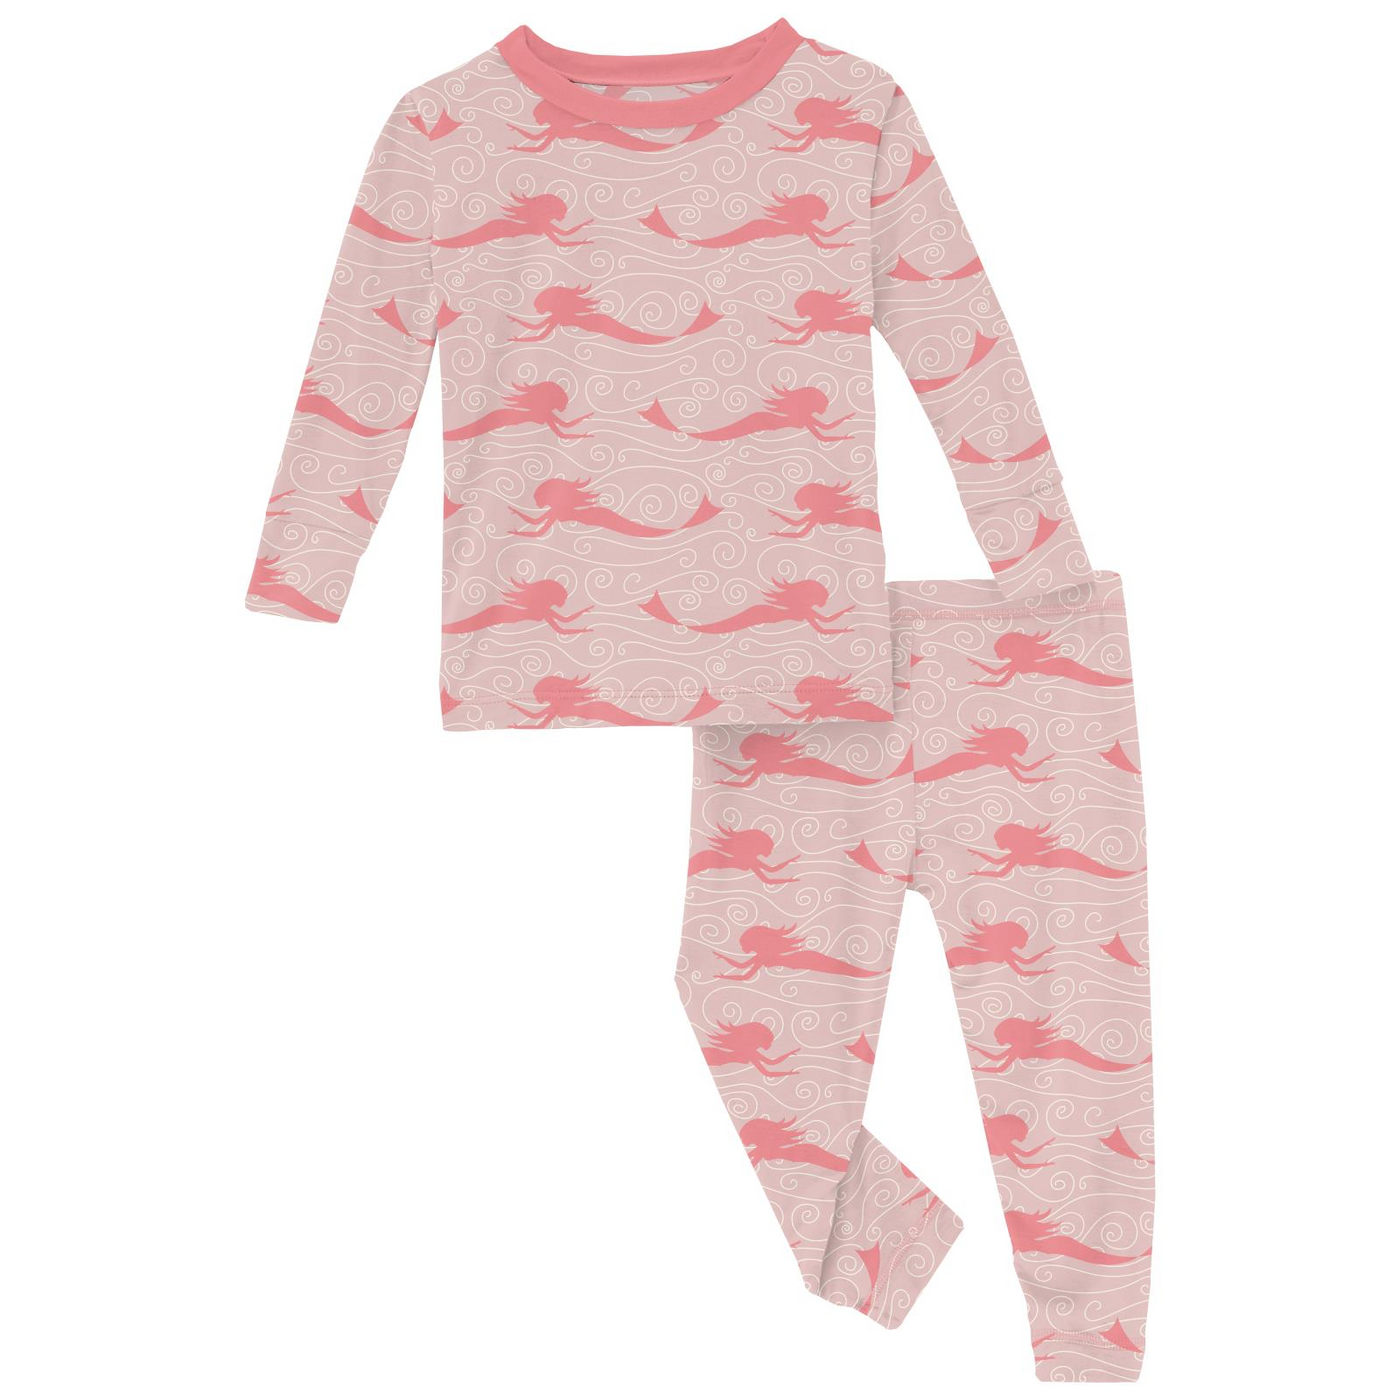 Kickee Pants Print Long Sleeve Pajama Set: Baby Rose Mermaid